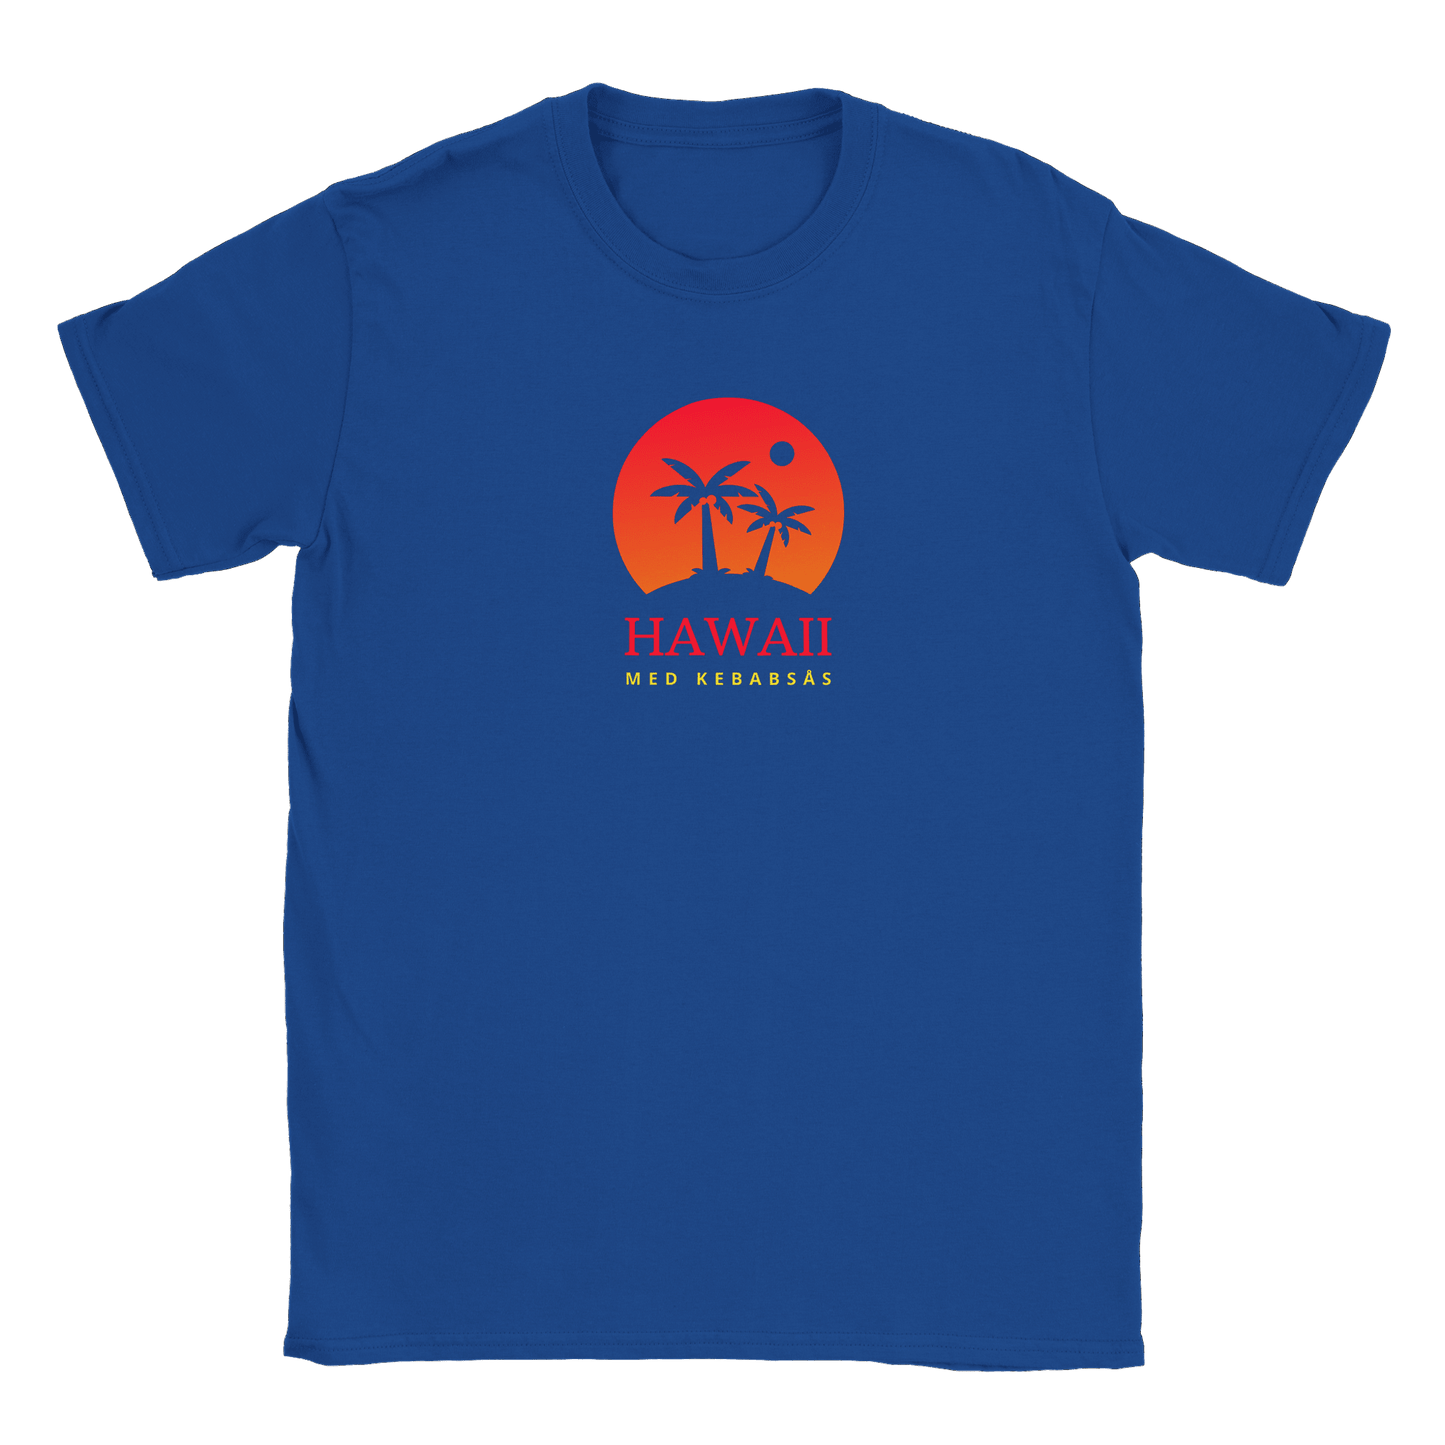 Hawaii med kebabsås - T-shirt Royal